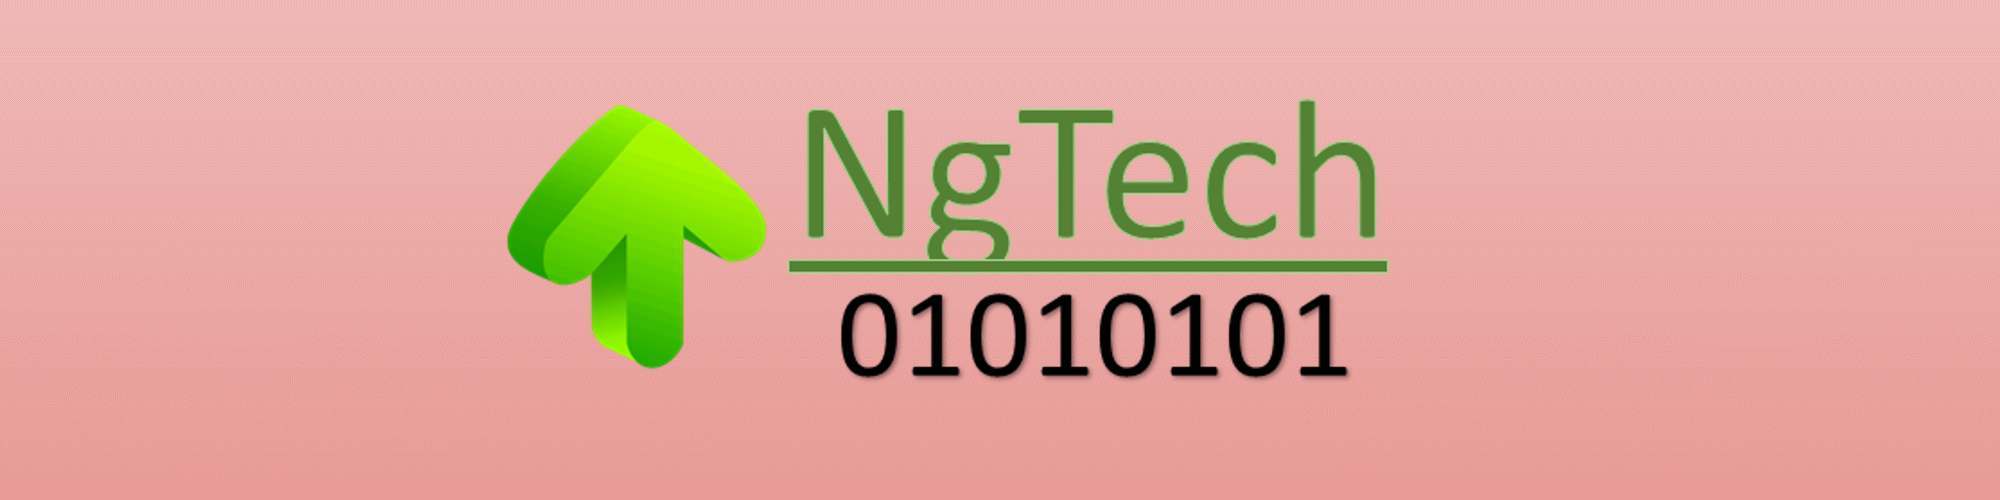 NgTech LTD